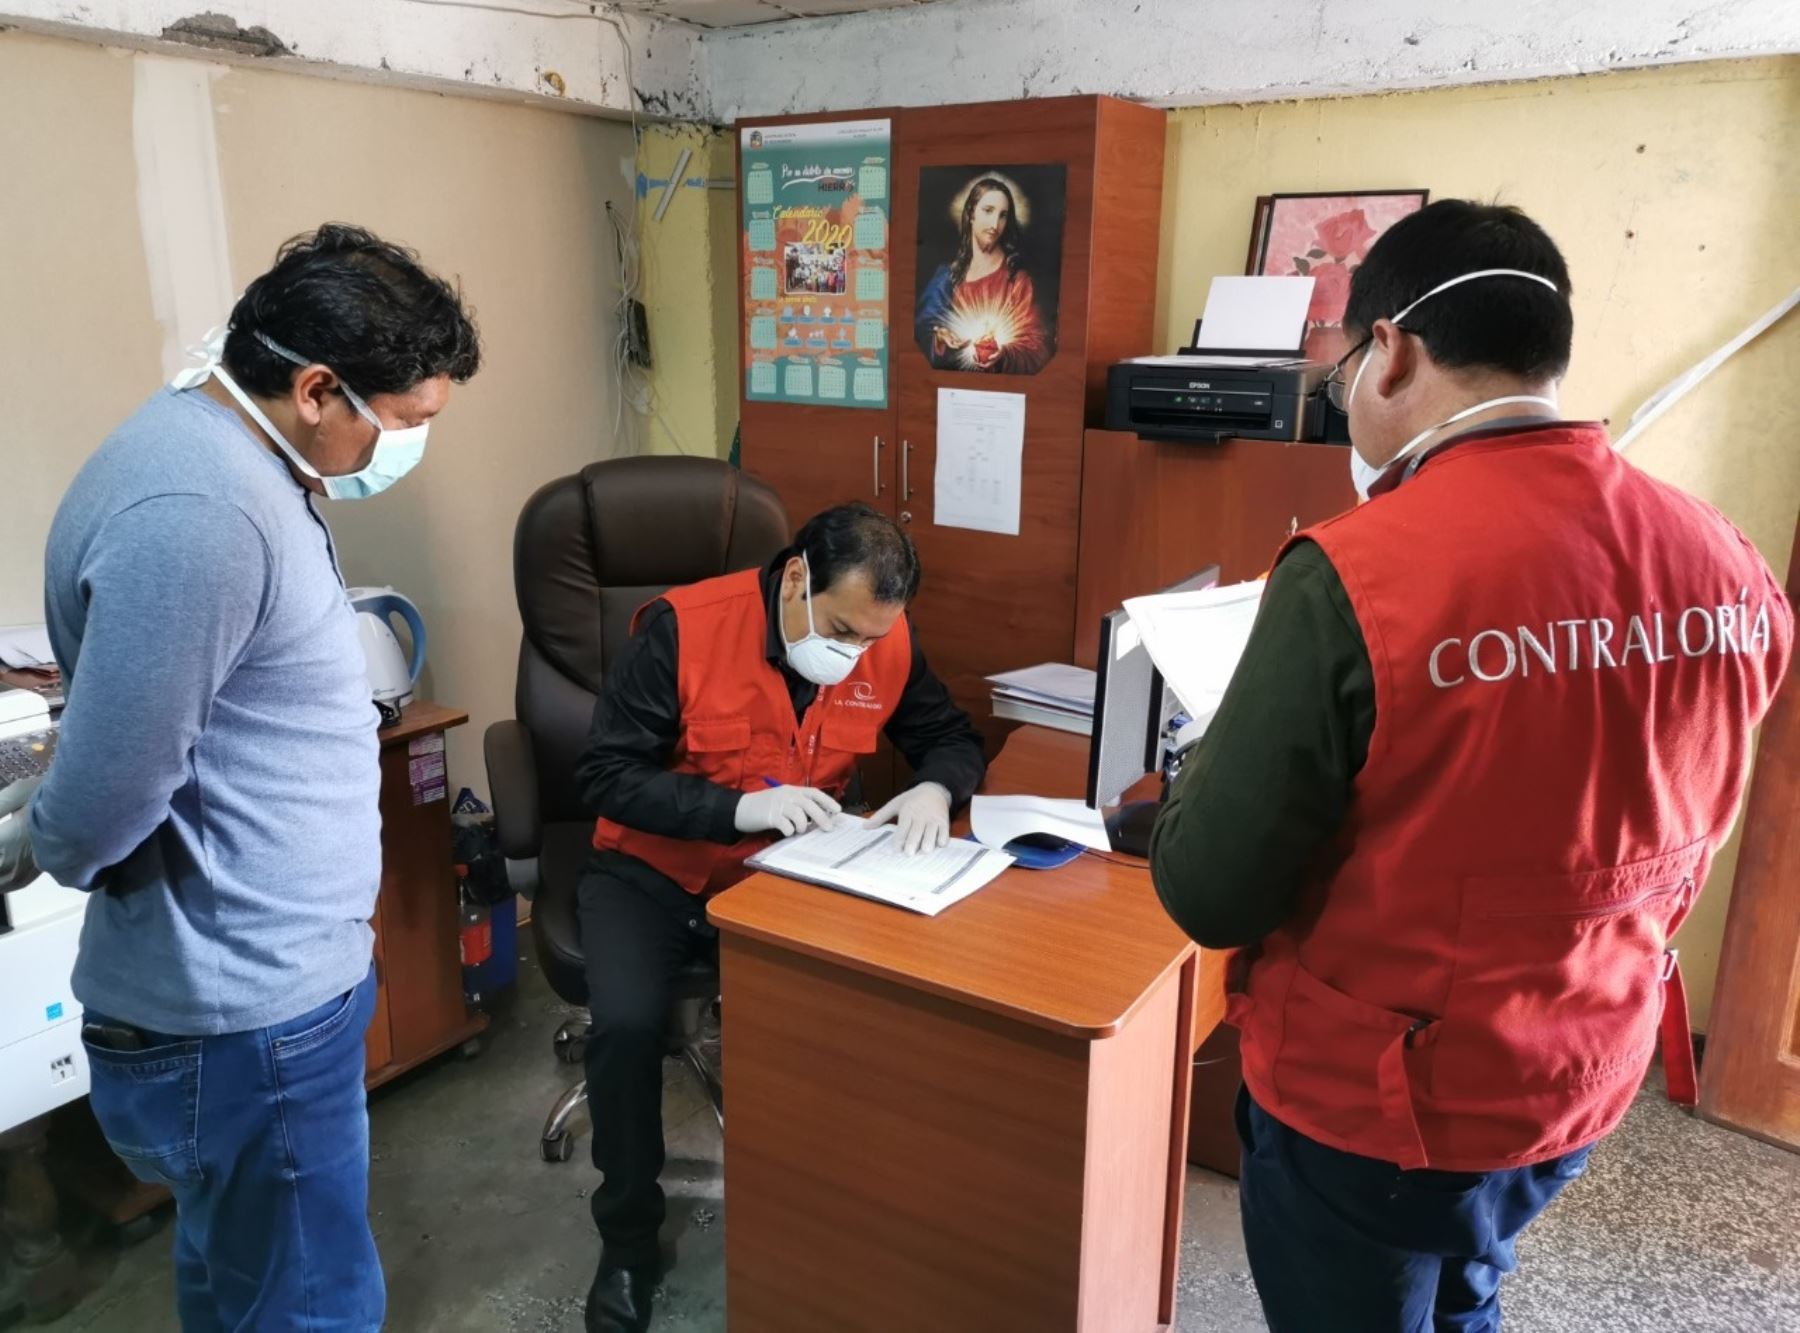 Contraloría inicia supervisión en entidades públicas regionales y locales de Piura. ANDINA/Difusión